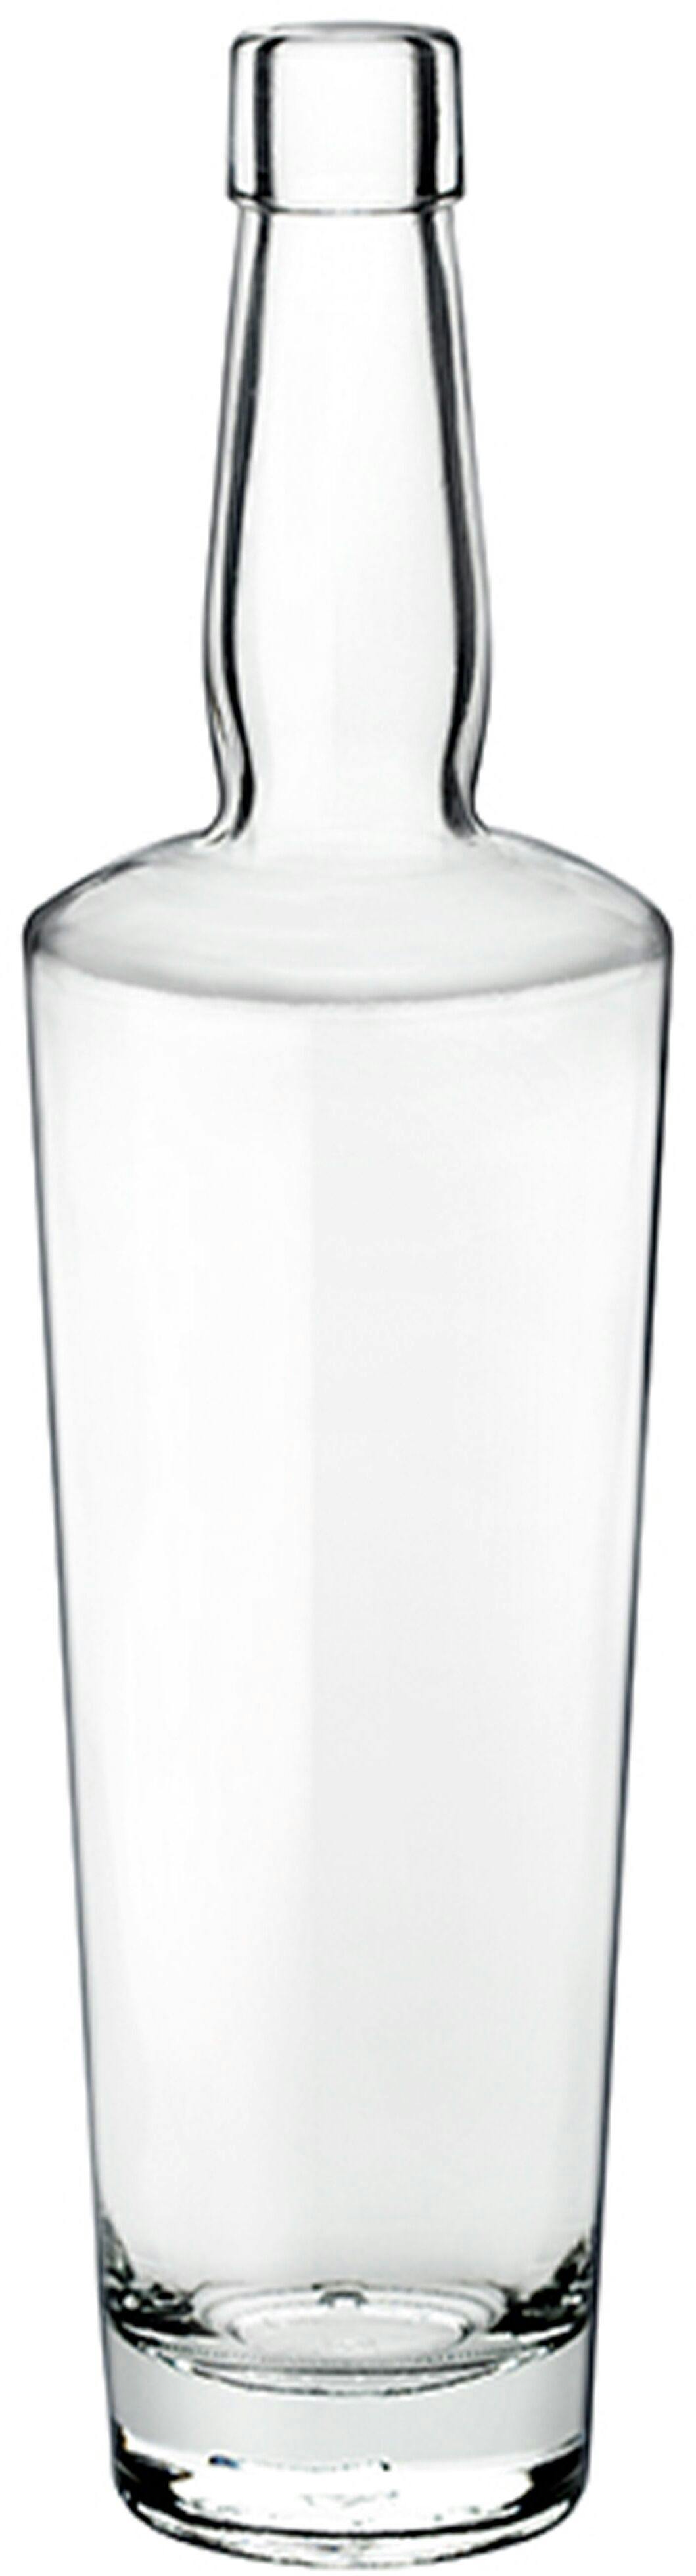 Bottiglia DOUG  700 ml BG-Sughero